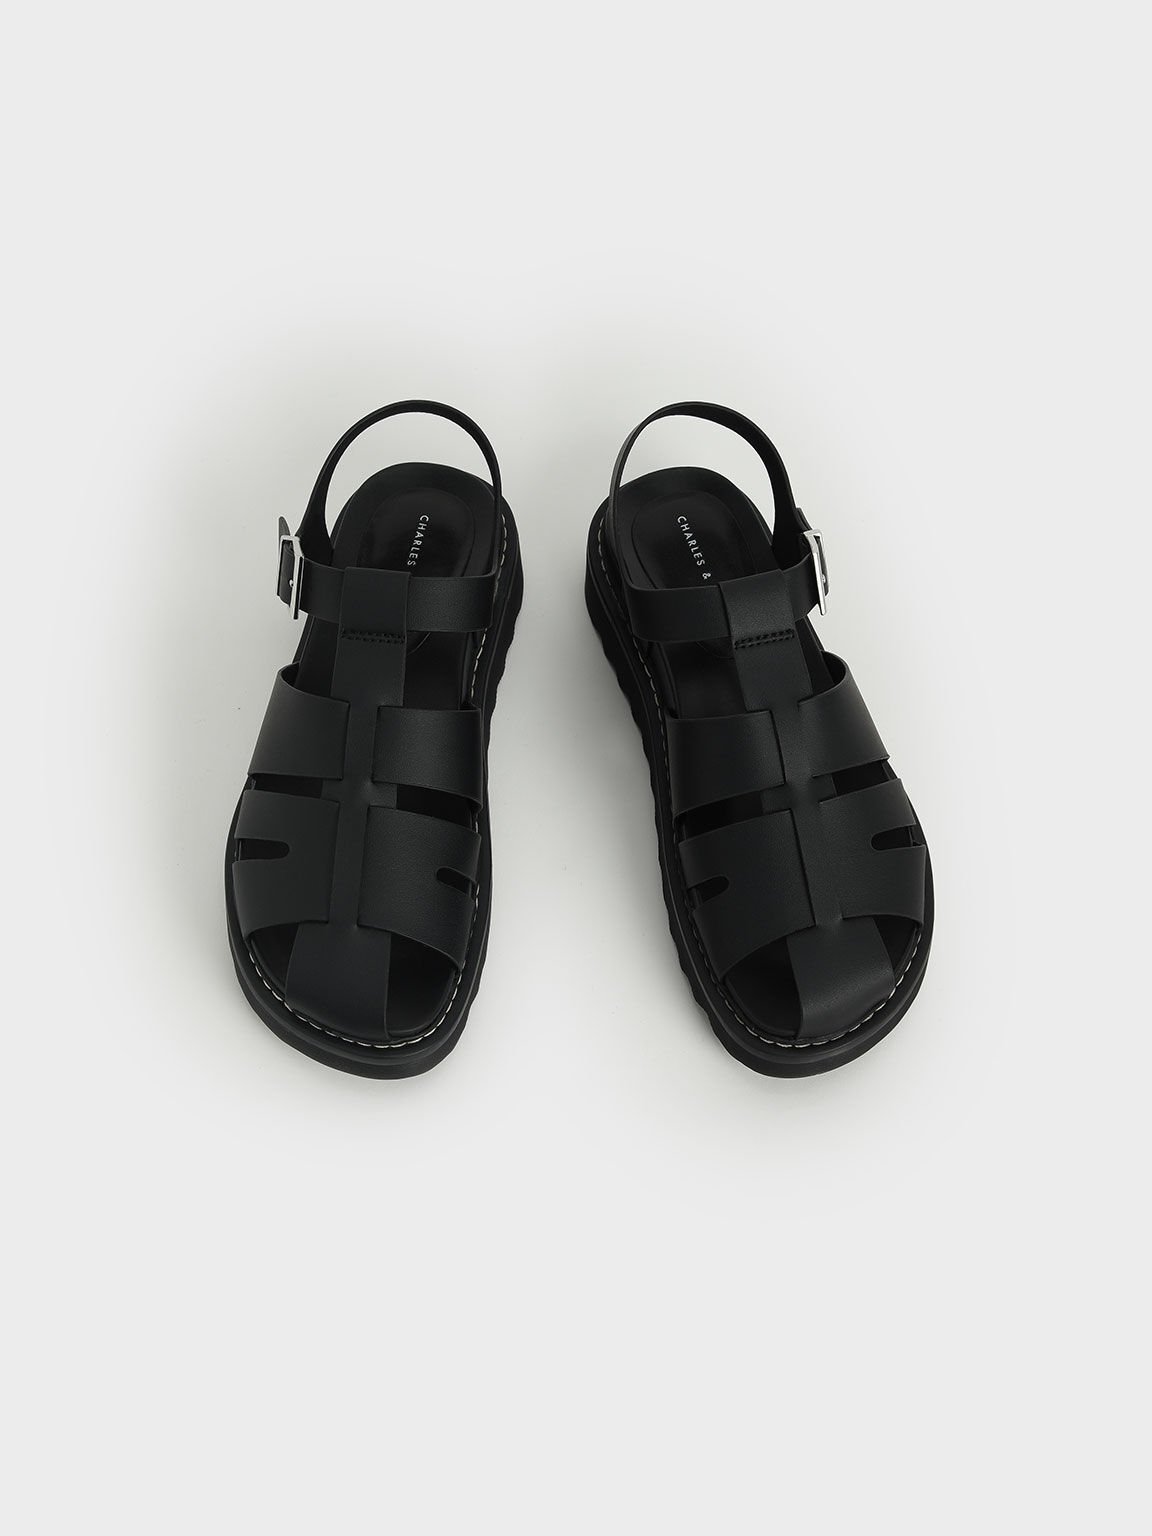 Interwoven Buckled Sandals, Black, hi-res